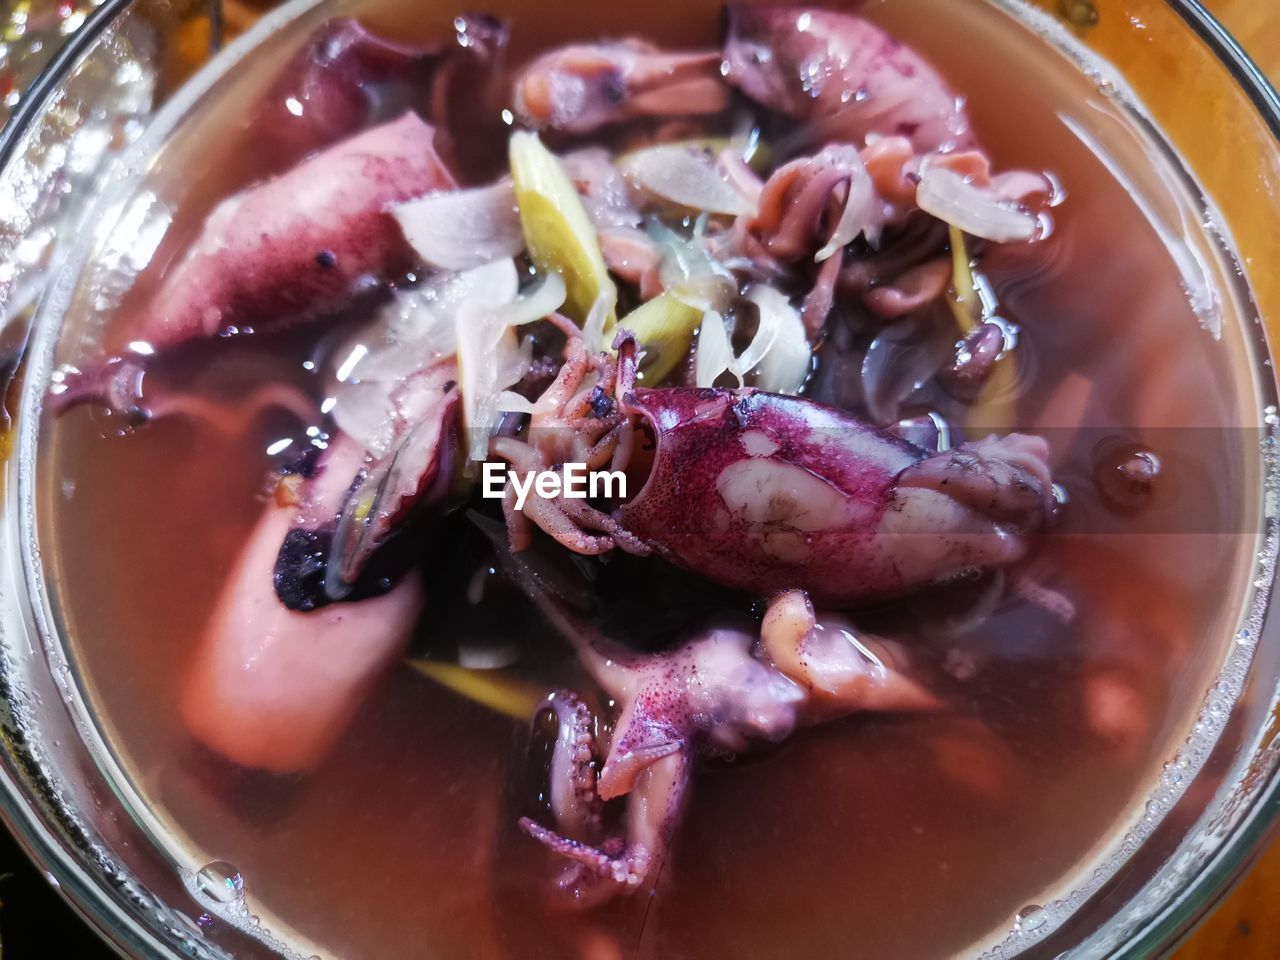 Octopus boiled in lemongrass
